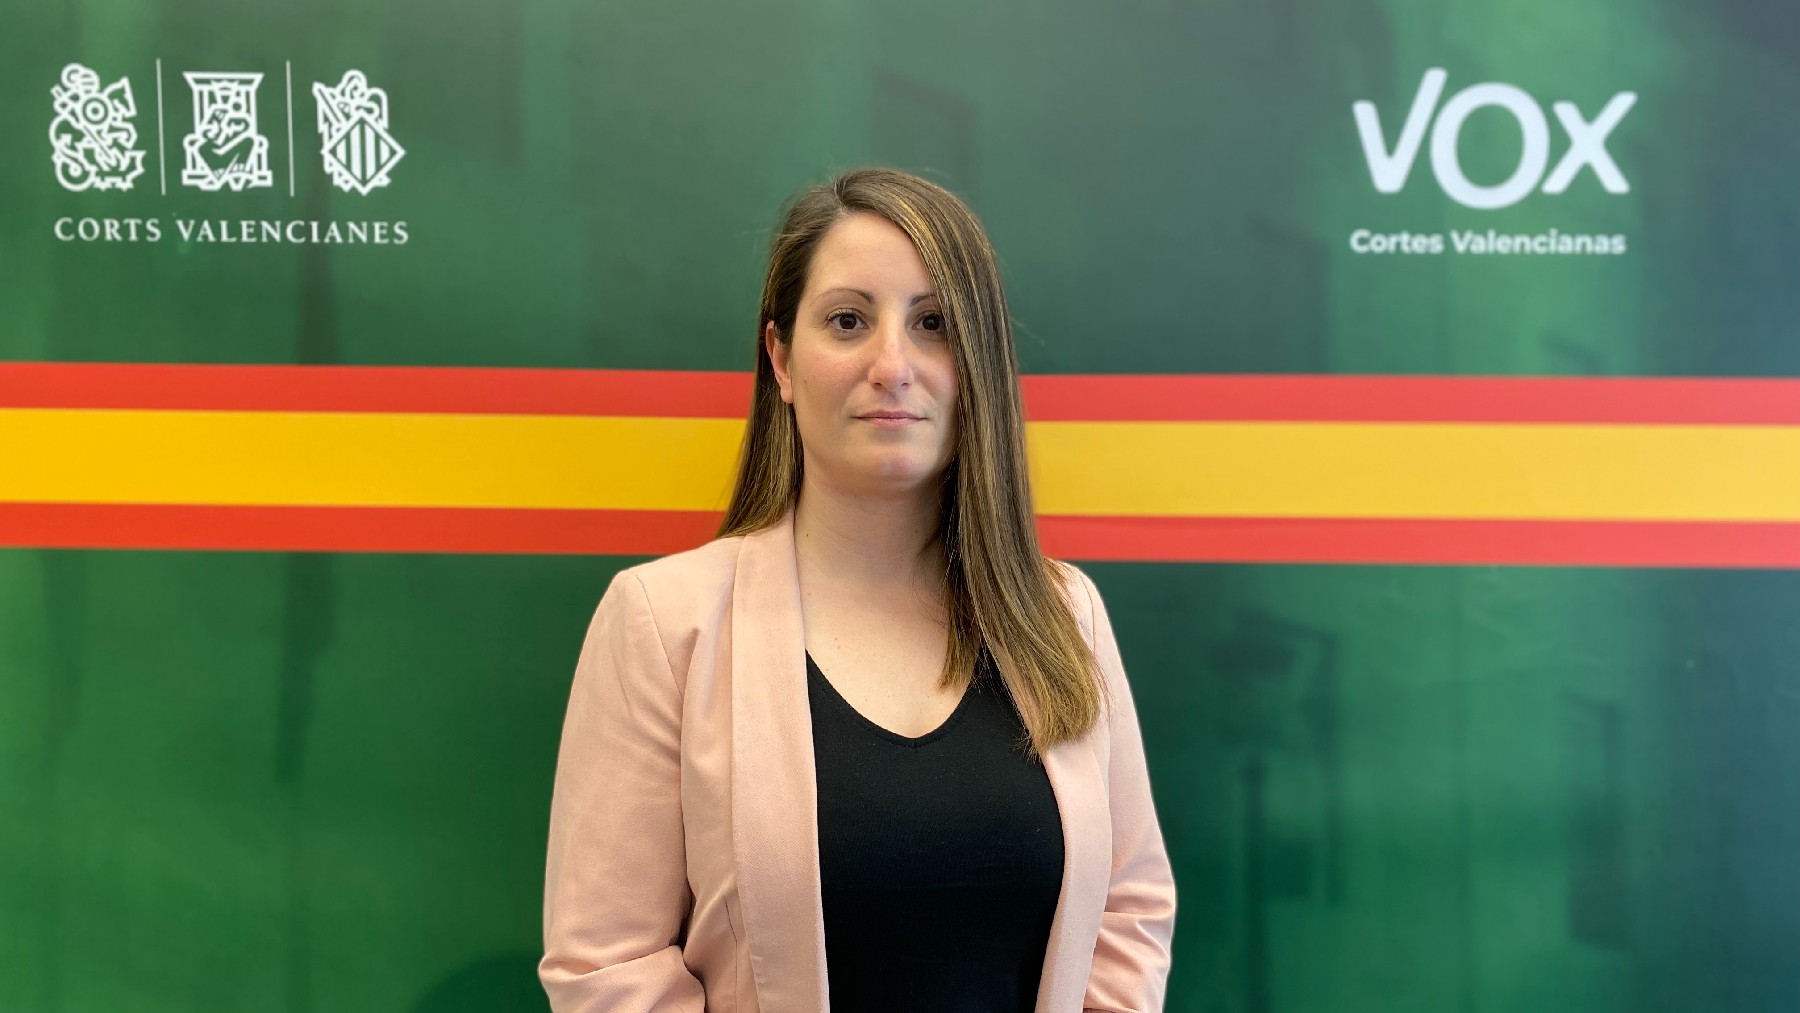 La síndica portavoz de Vox en las Cortes Valencianas Ana Vega.